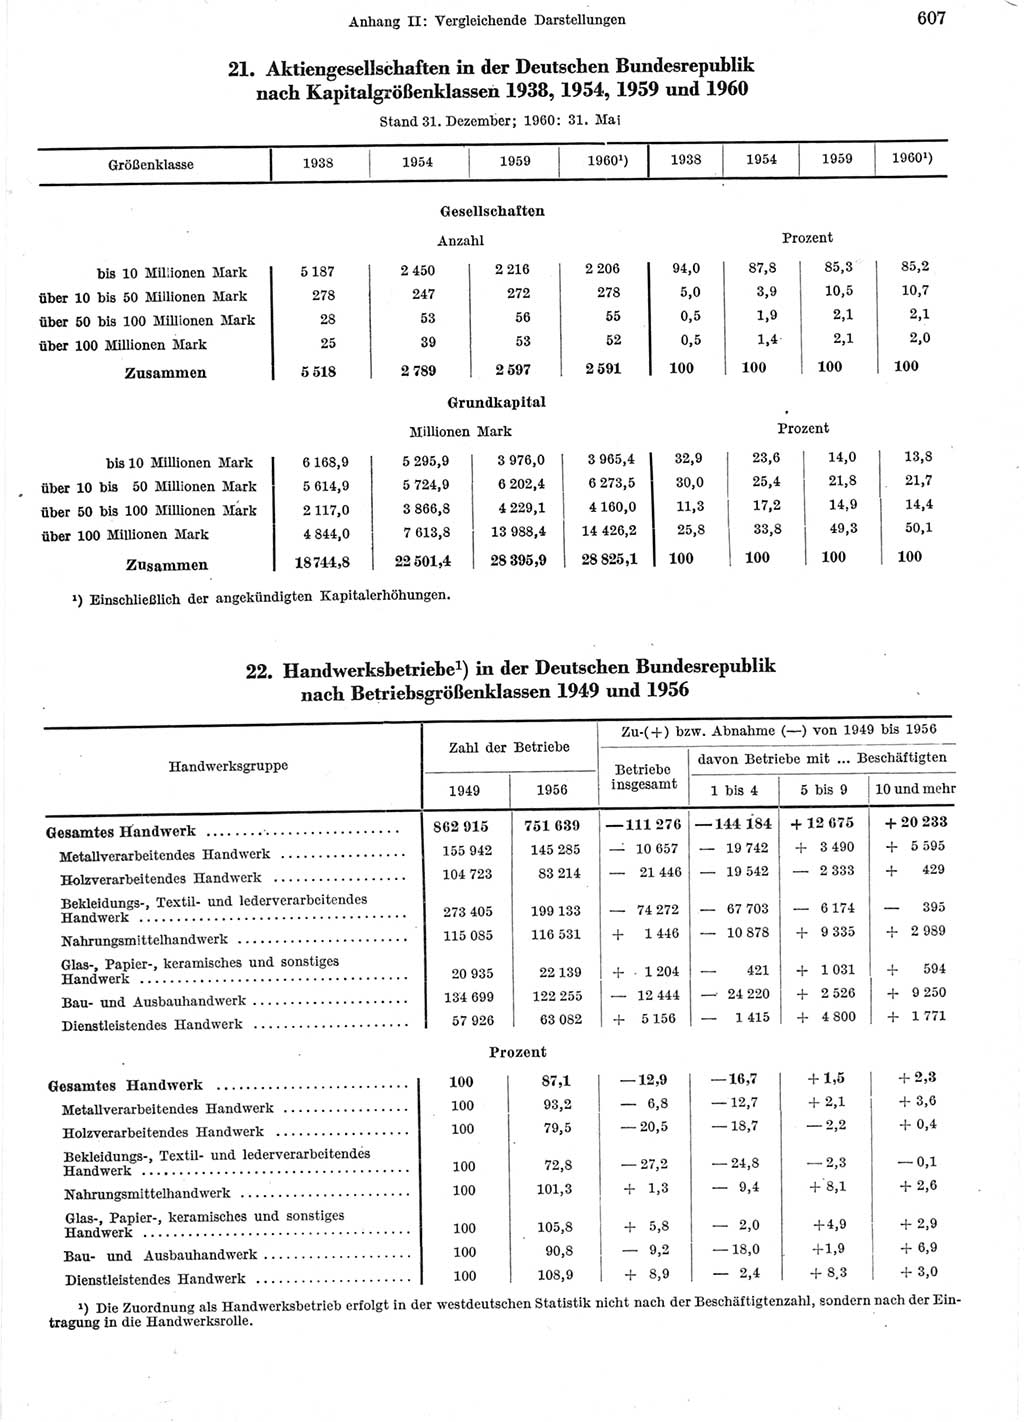 Statistisches Jahrbuch der Deutschen Demokratischen Republik (DDR) 1960-1961, Seite 607 (Stat. Jb. DDR 1960-1961, S. 607)